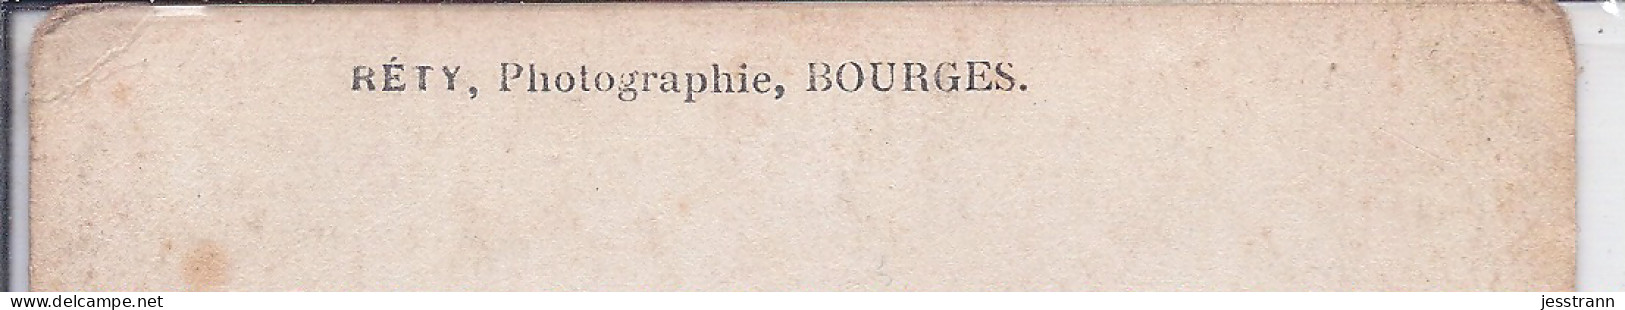 BOURGES- CARTE-PHOTO- UNE EQUIPE DE VALEUREUX SOLDATS CHEZ LE PHOTOGRAPHE RETY A BOURGES - Bourges